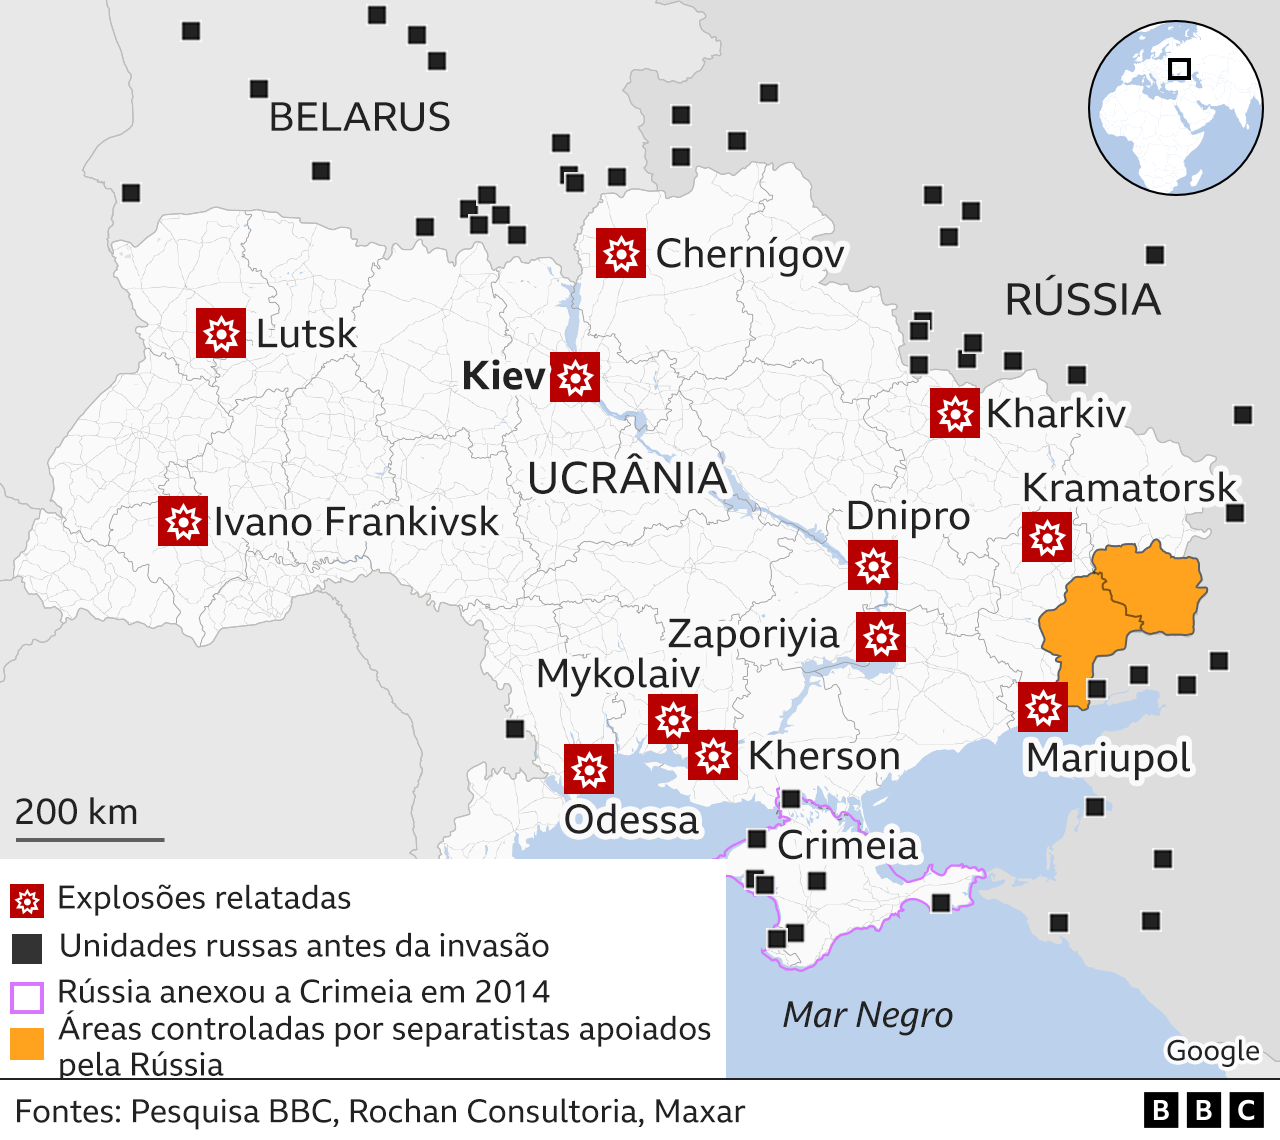 Guerra Na Ucrânia O Ataque Da Rússia Em Mapas Bbc News Brasil